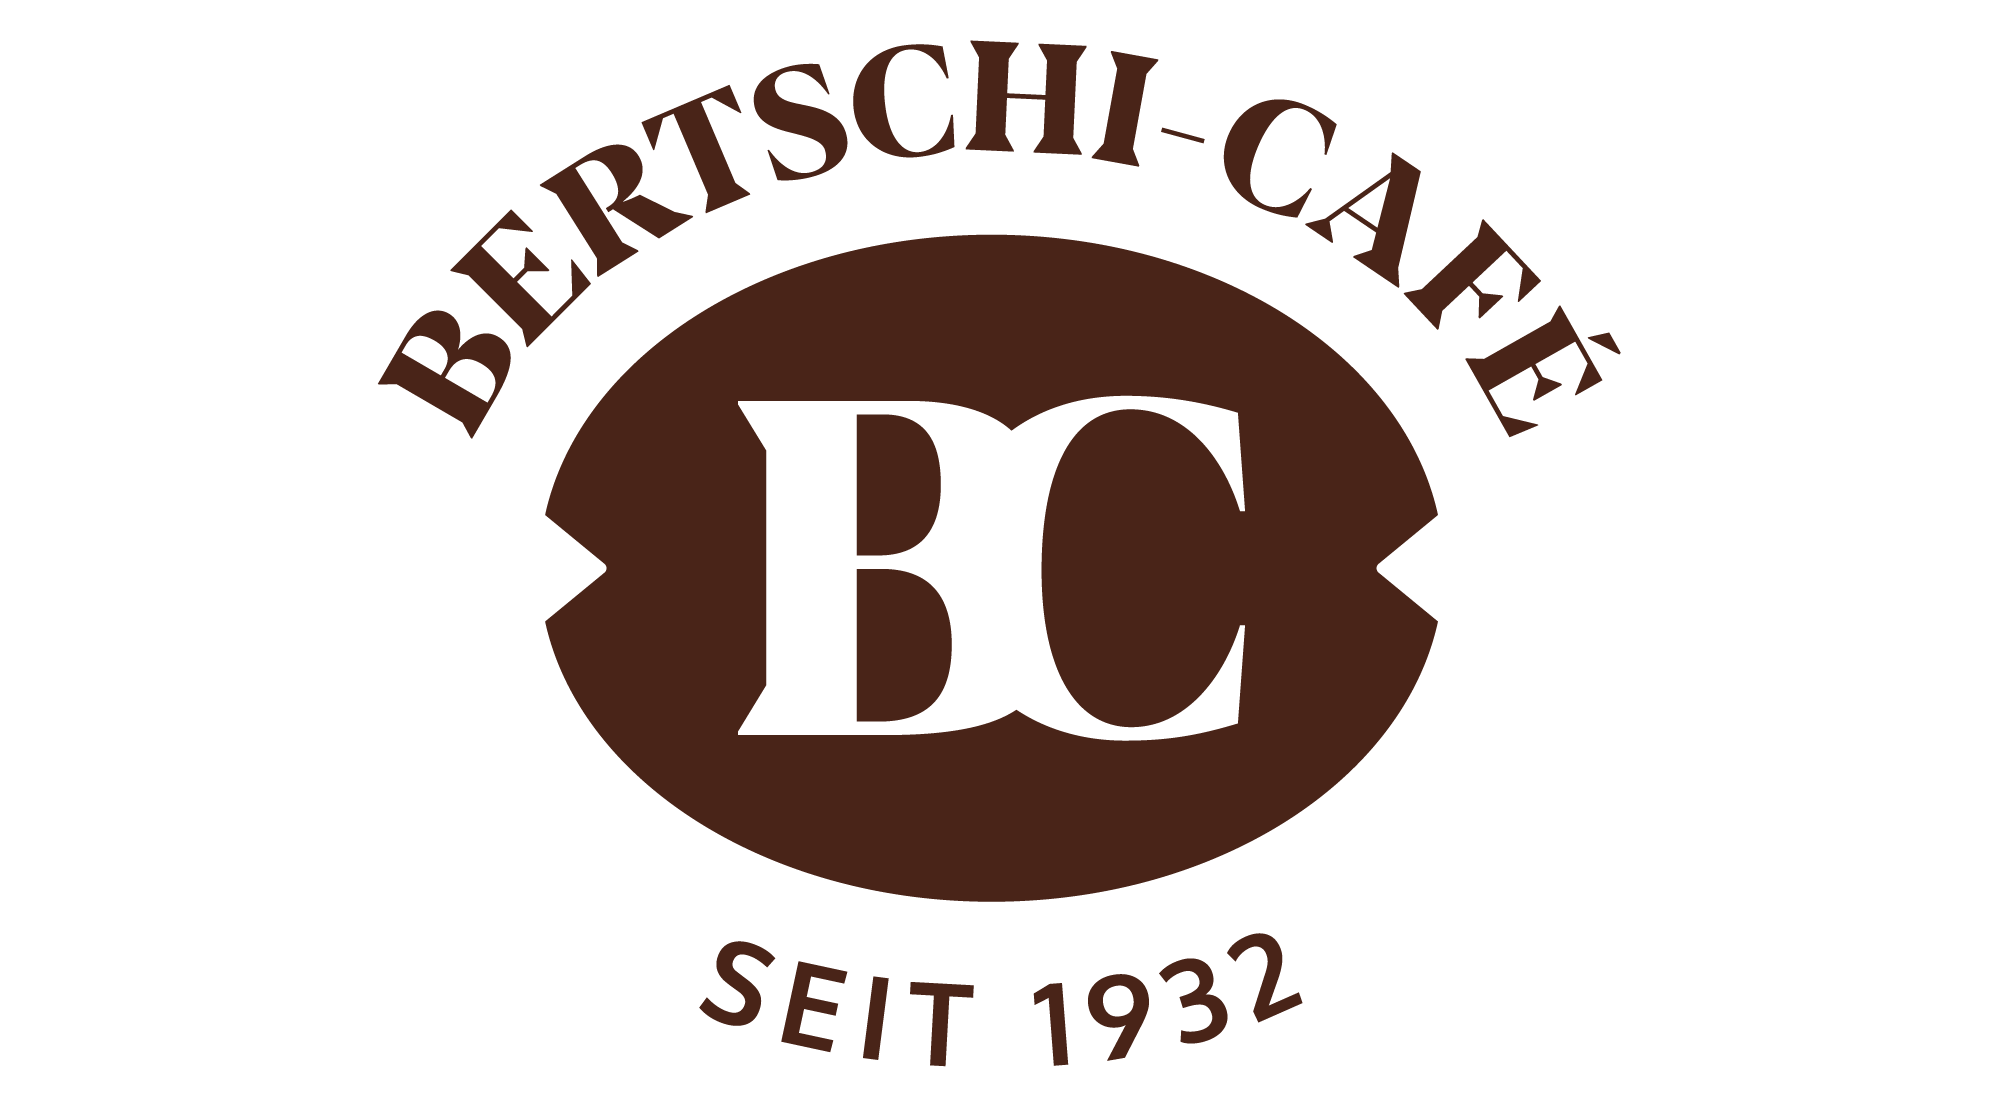 Torréfaction de café Bertschi Café